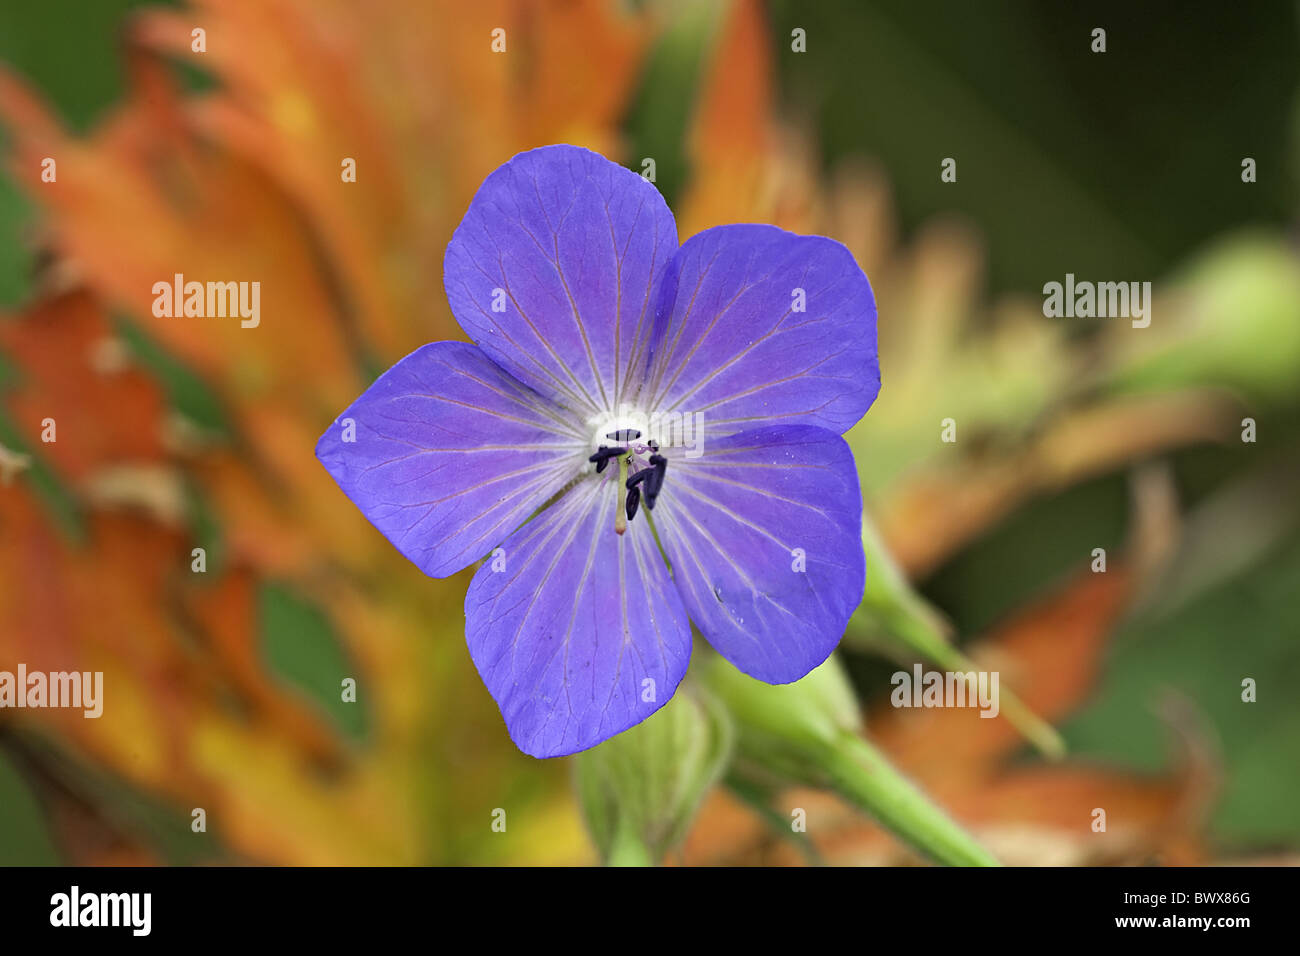 Storchschnabel Pratense Alamy Blüten Staubblätter - Farbe Blüte blaue Pflanze Geranium Stigma Blume Stockfotografie Blume Storchschnabel Wiesen Wiese Blumen